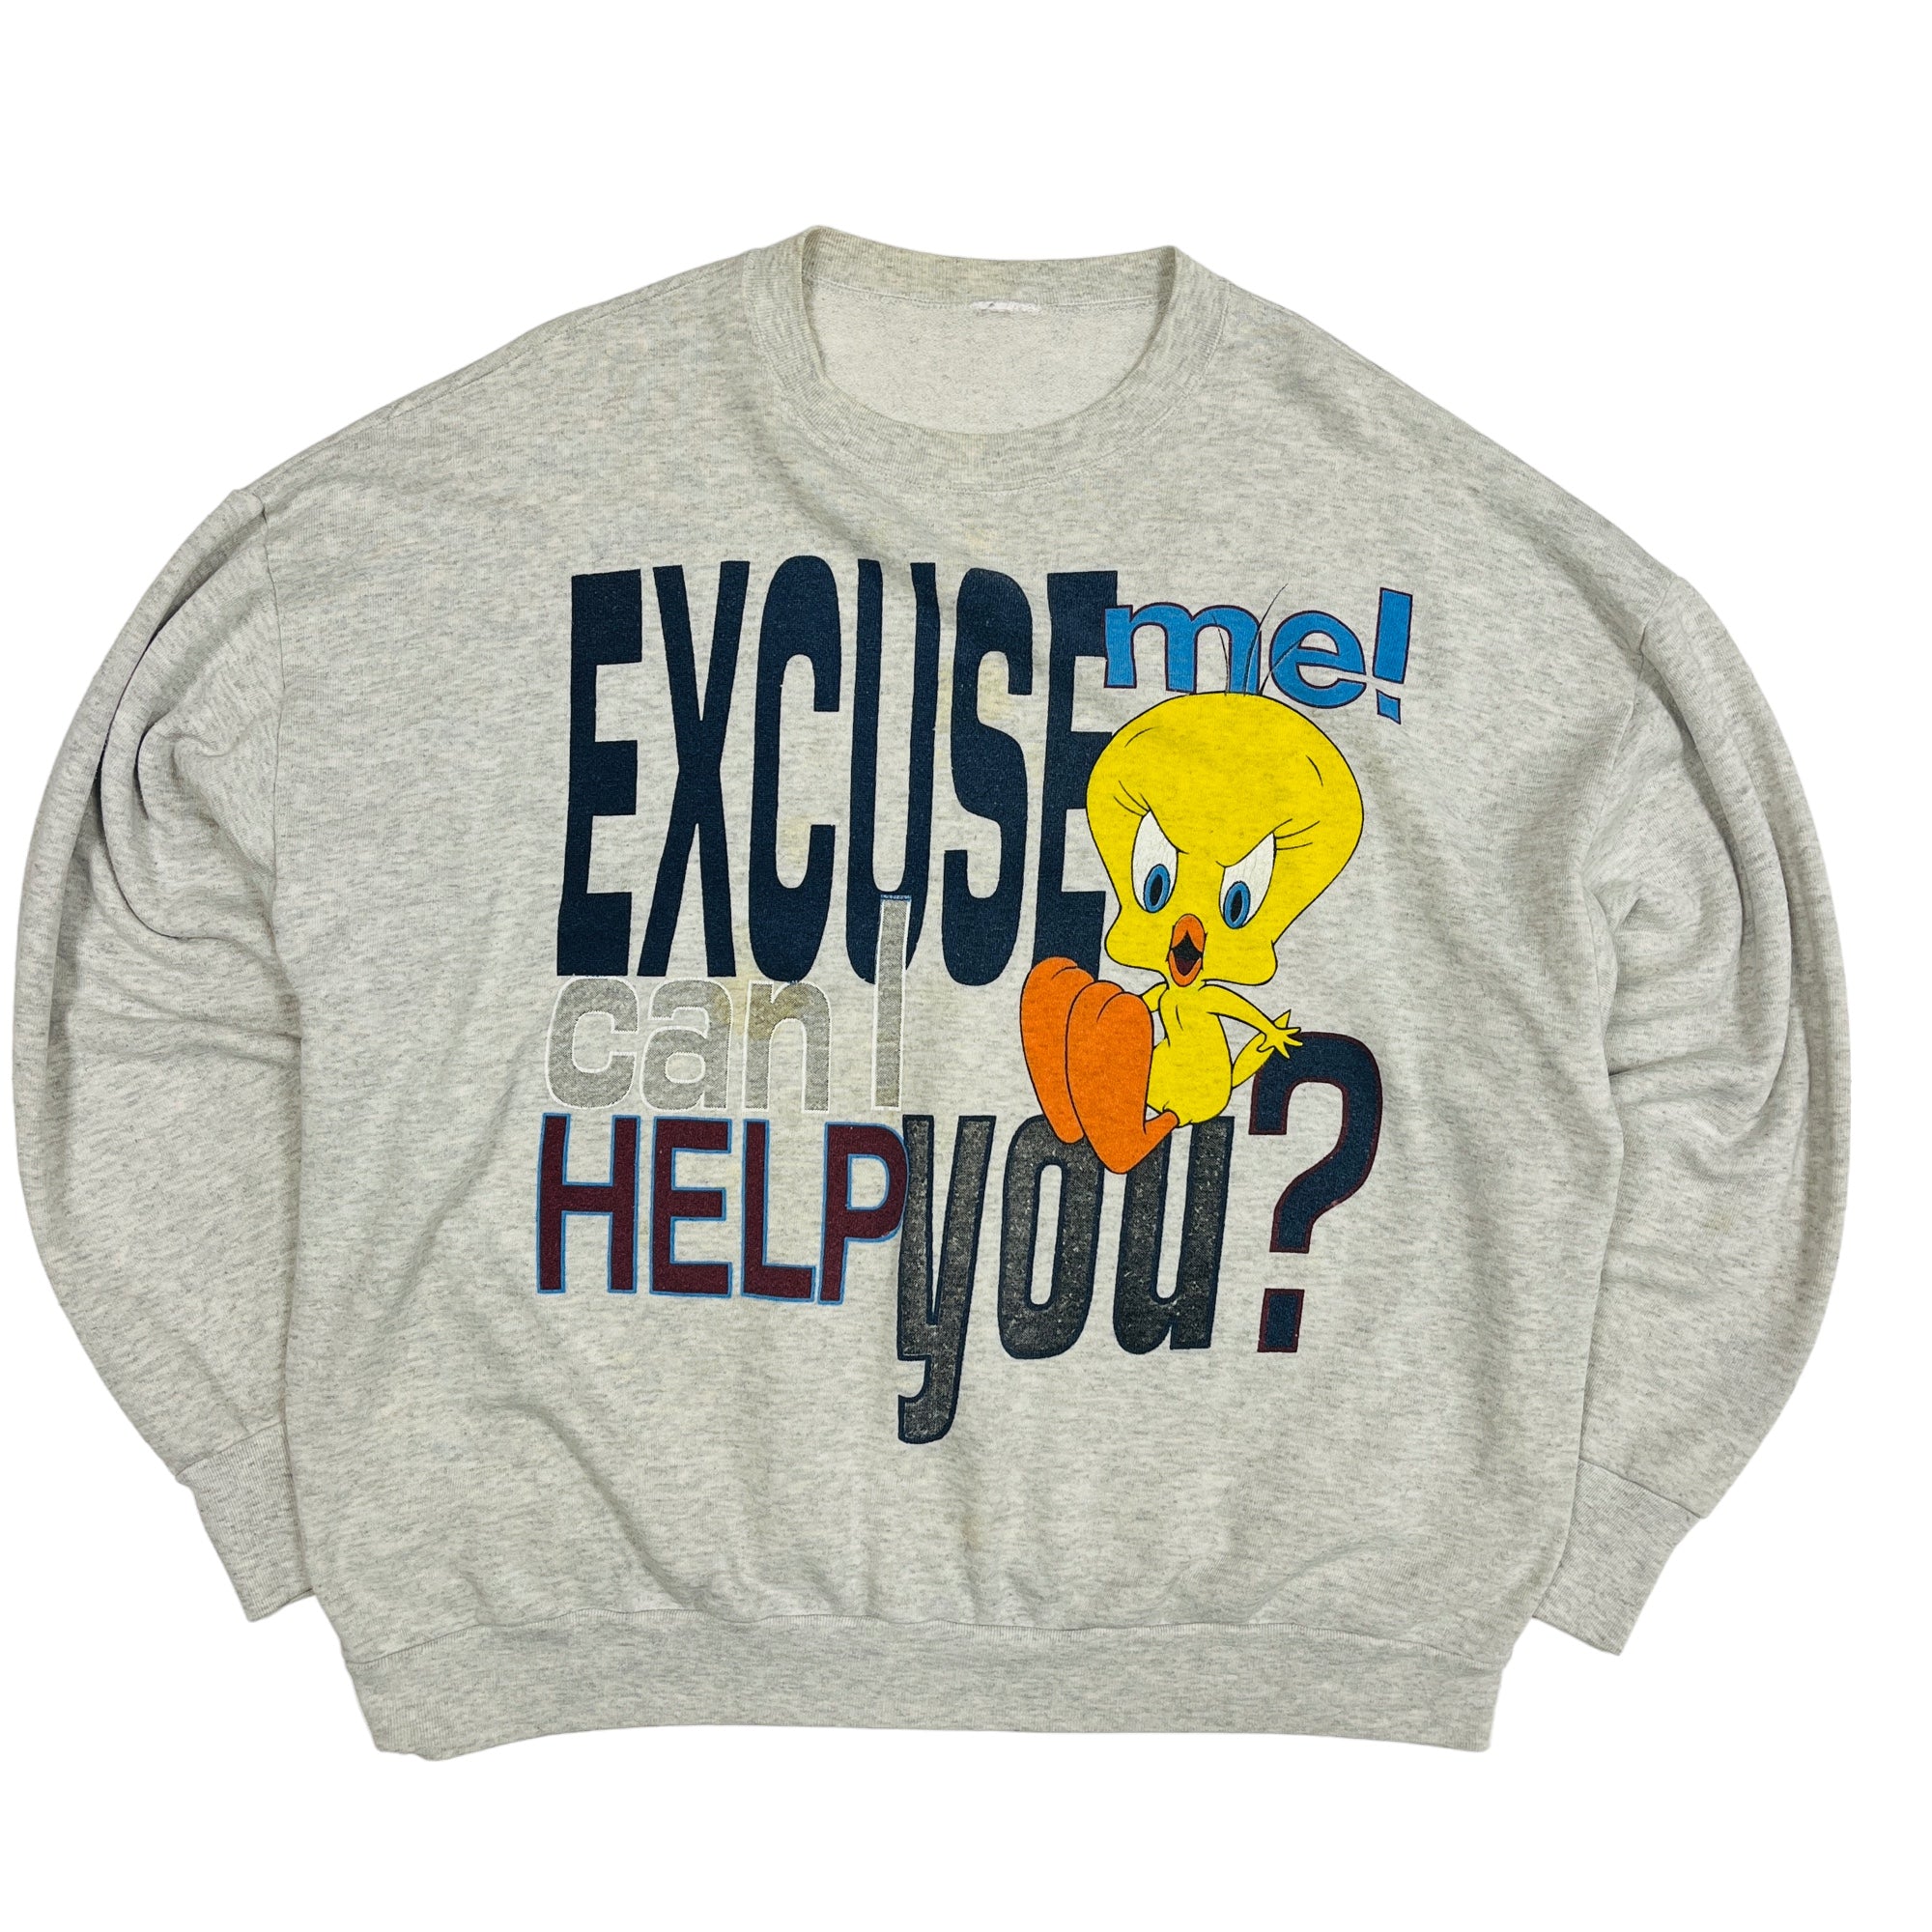 90's Tweety Bird Looney Tunes "Excuse Me Can I Help You" Sweatshirt 2XL